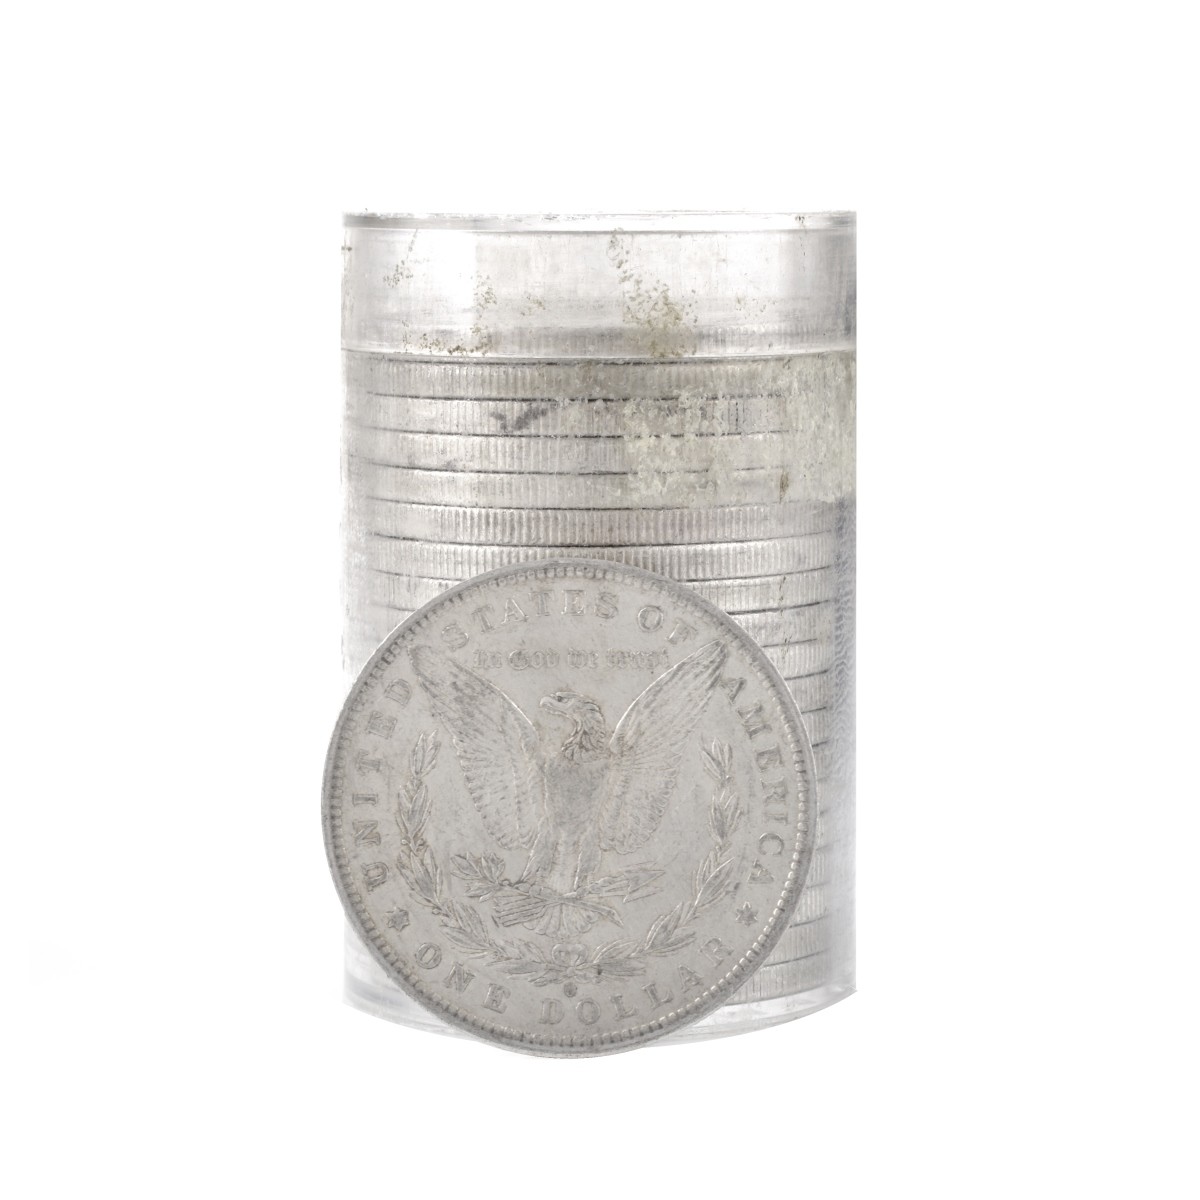 1883-O US Silver Morgan Dollars